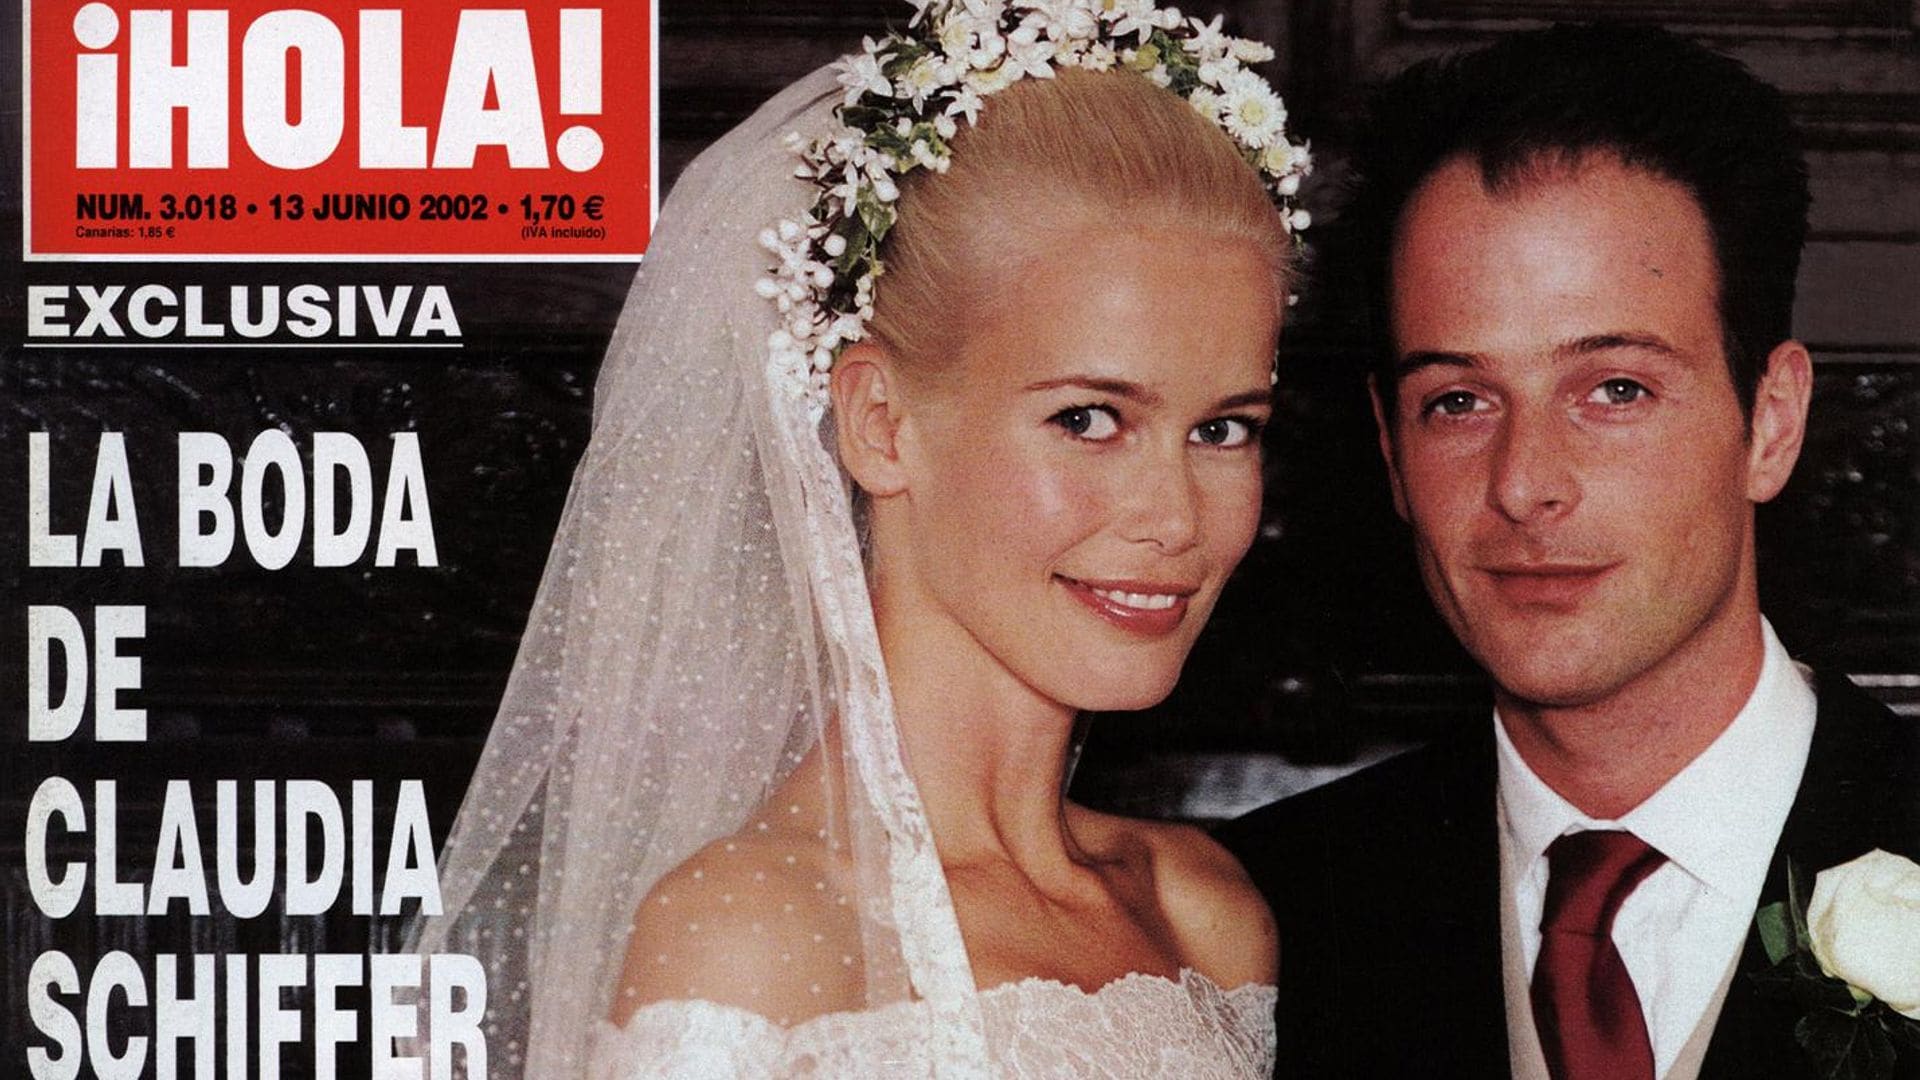 Claudia Schiffer y Matthew Vaughn cumplen 20 años de casados: así contó ¡HOLA! su boda